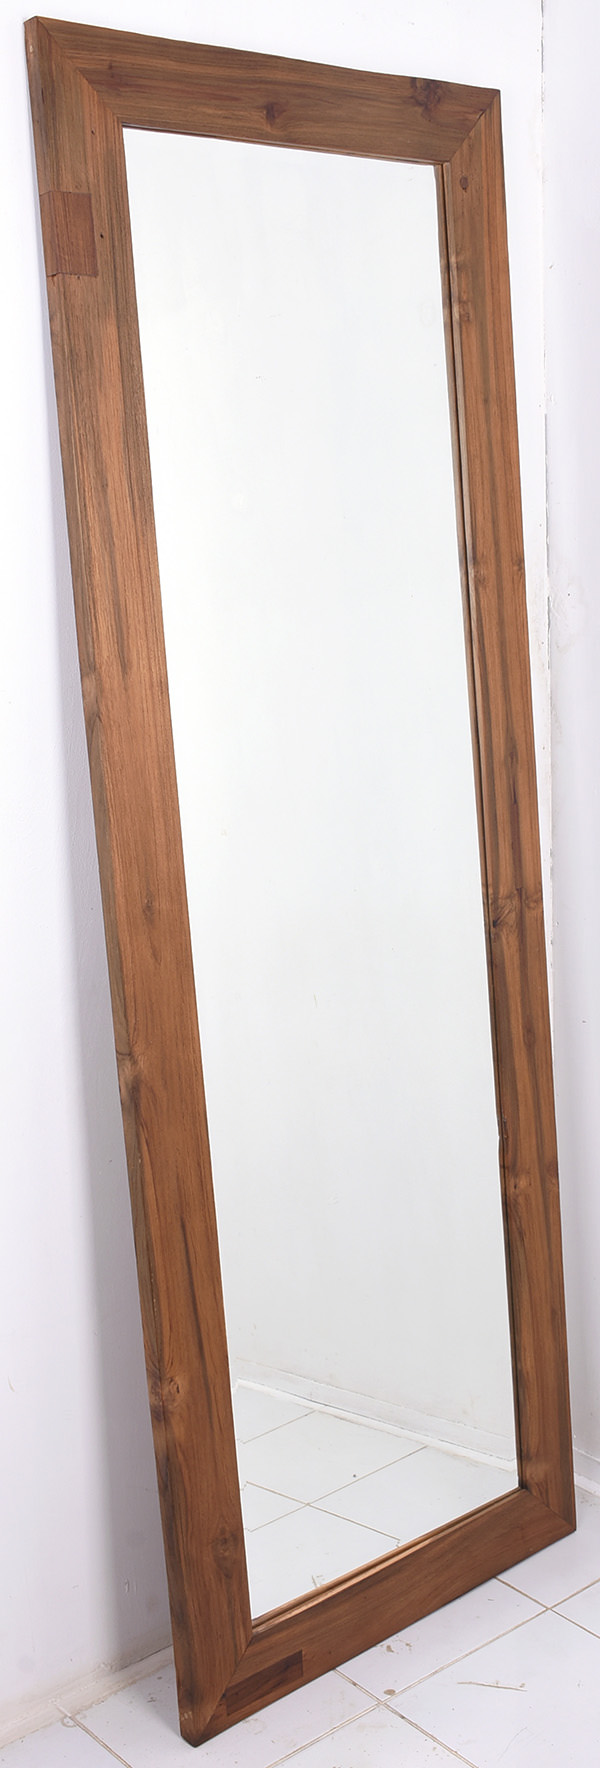 Wooden standing mirror